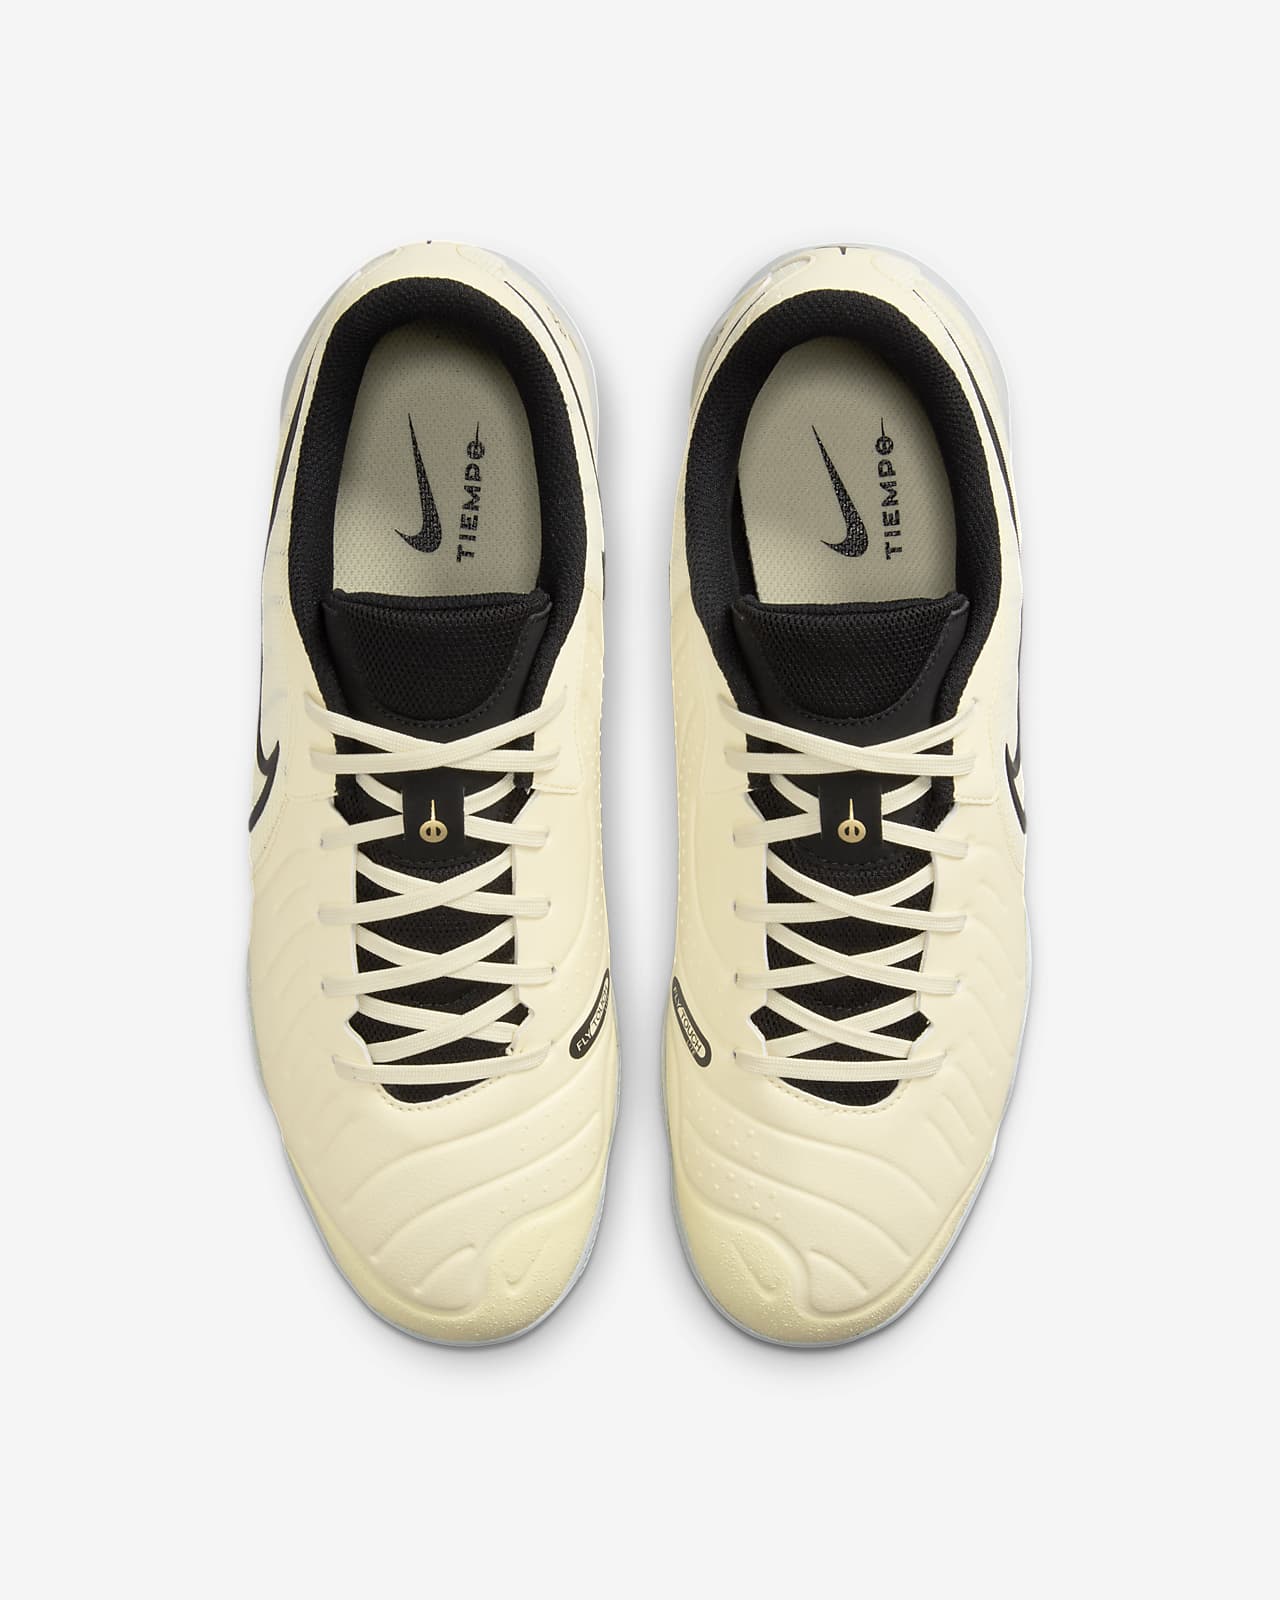 Academy Tiempo Low-Top Shoes. Indoor/Court Nike 10 Soccer Legend